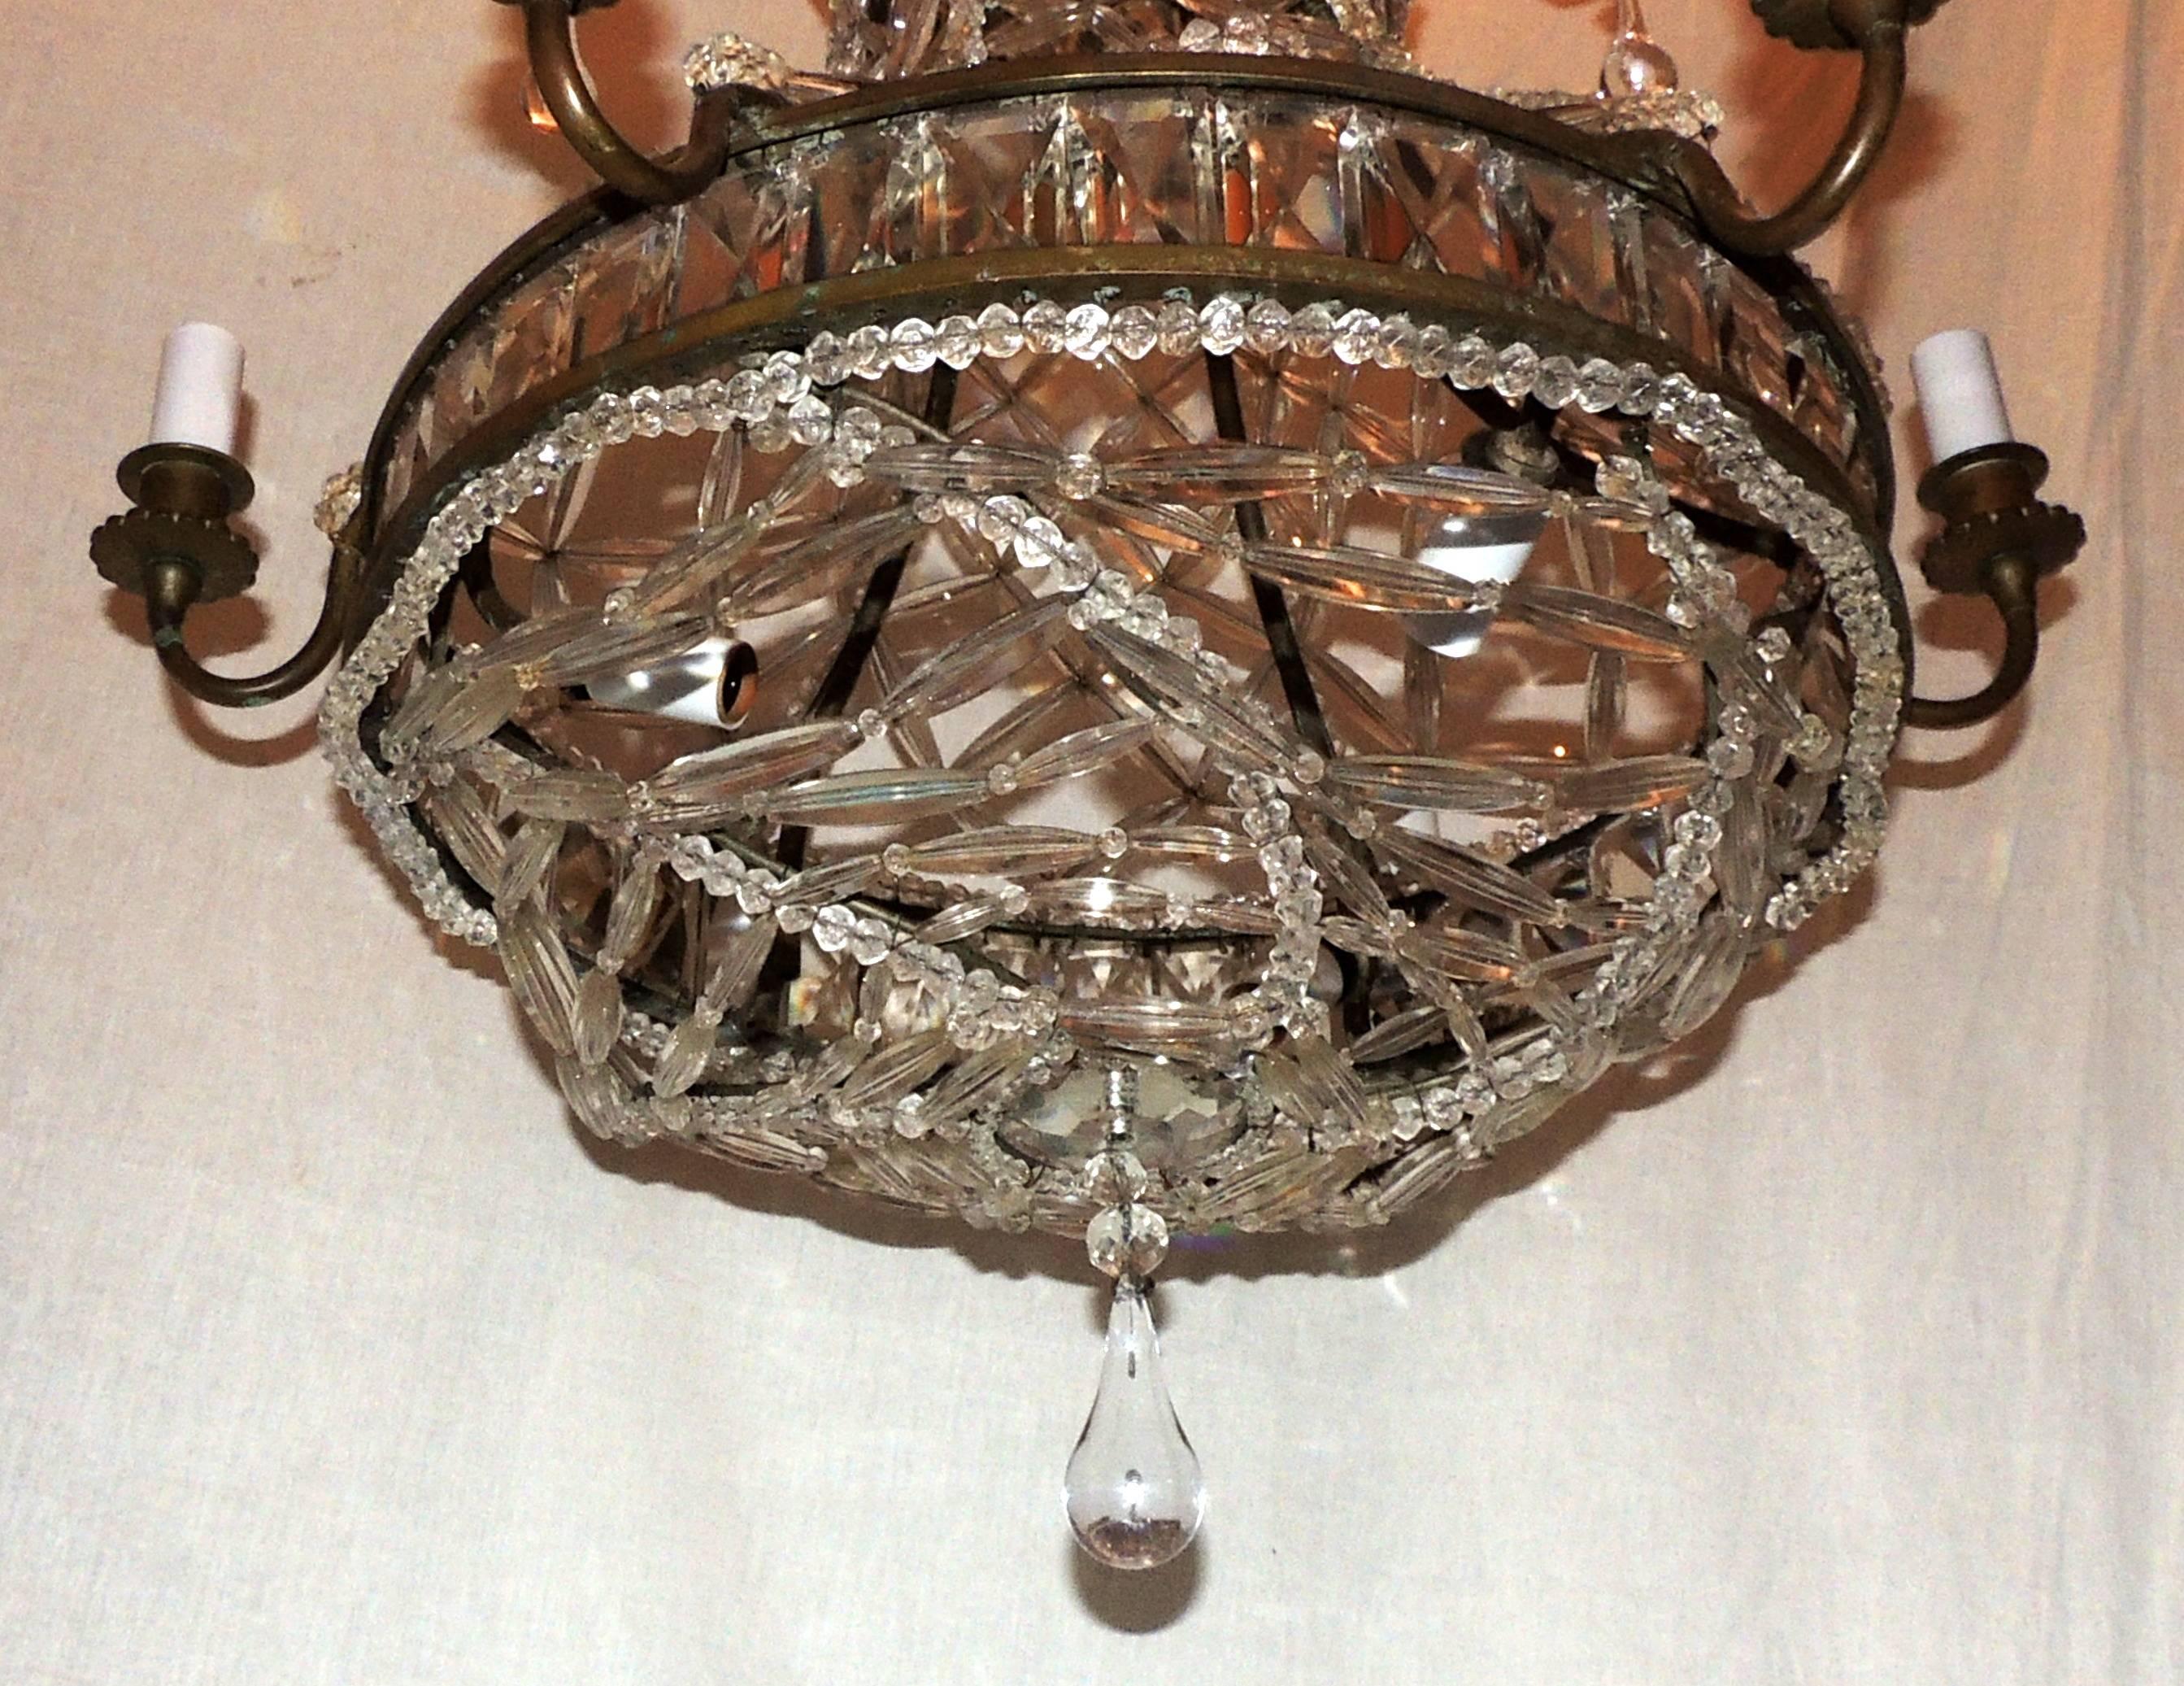 Ein wundervoller französischer Bronze- und Kristallgitter-Kronleuchter mit Perlen und Tropfenkristallen.
Diese schöne Leuchte hat sechs Lichter um das äußere Band und außerdem drei Innenlichter.
Maße: 22